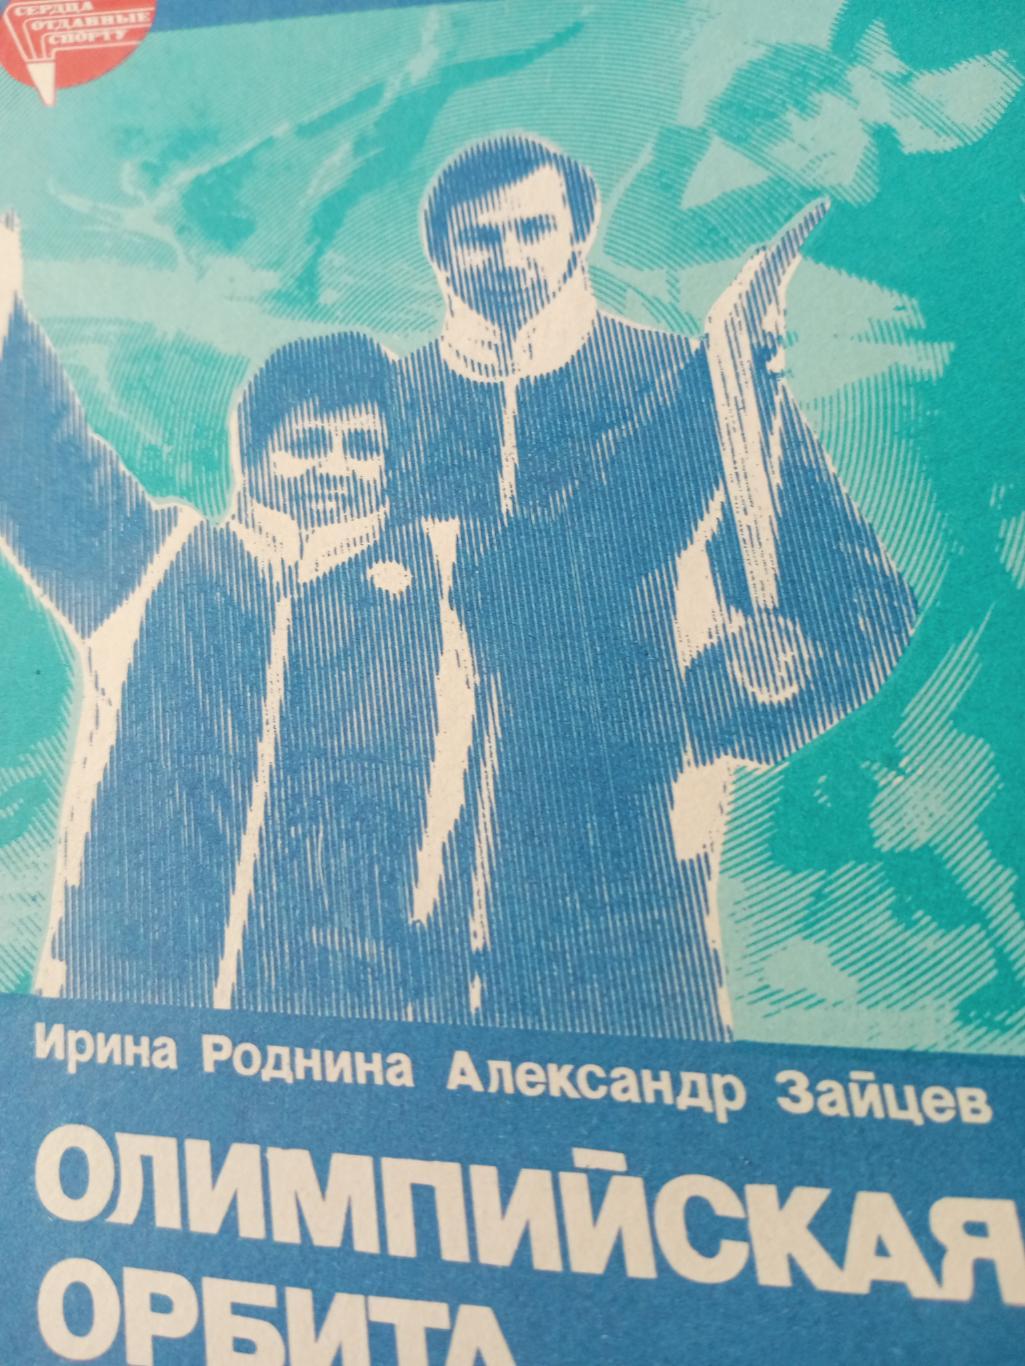 И.Роднина, А.Зайцев. Олимпийская орбита. Москва, 1984 год